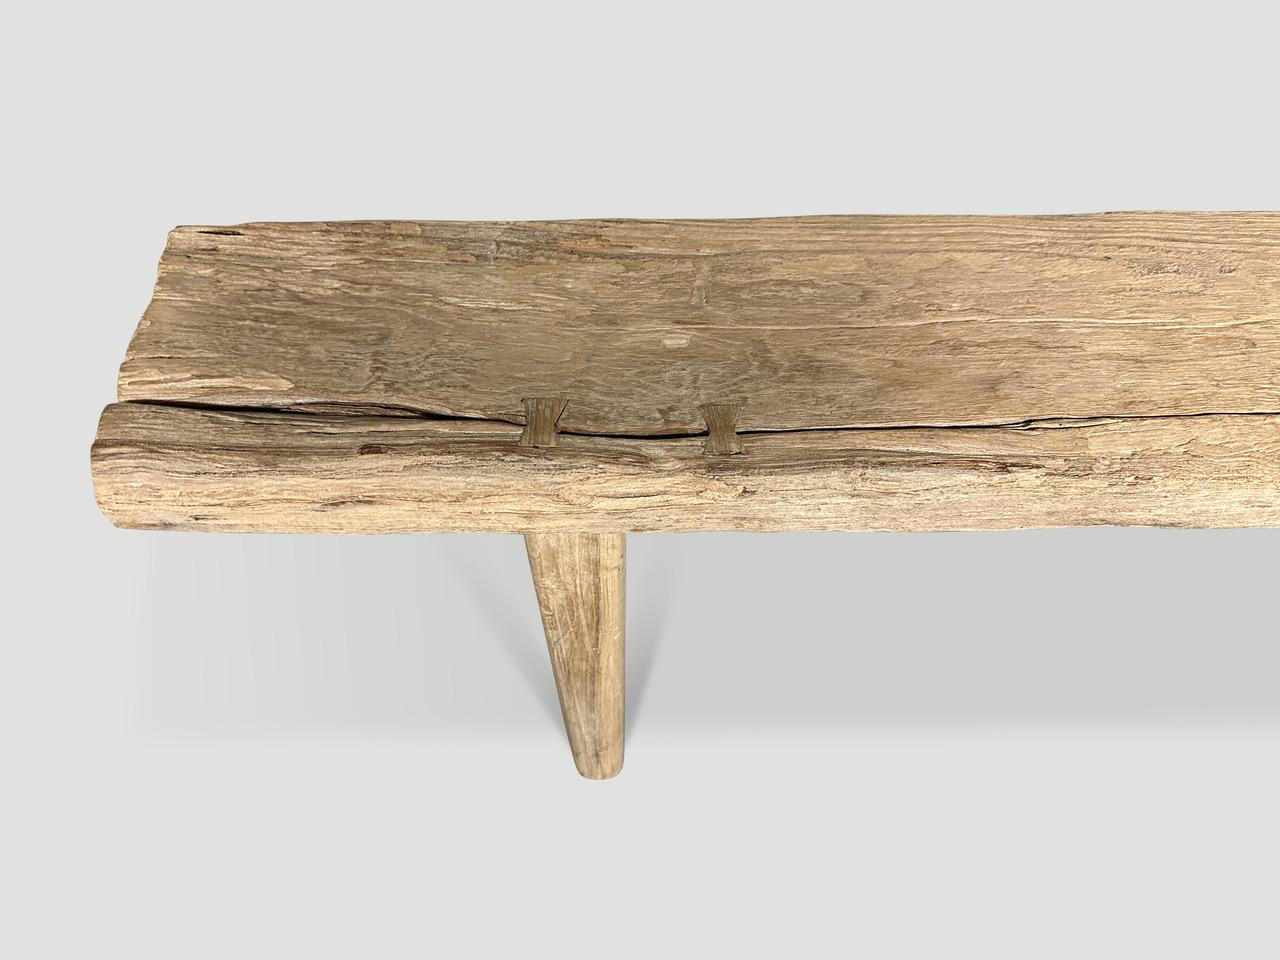 Wir haben dieses beeindruckende antike Holzpaneel mit glatten, minimalistischen Teakholzbeinen versehen. In das Holz wurden Schmetterlinge eingelegt. Es kommt auf die Details an. Um 1930. 

Diese Bank wurde im Geiste von Wabi-Sabi handgefertigt,